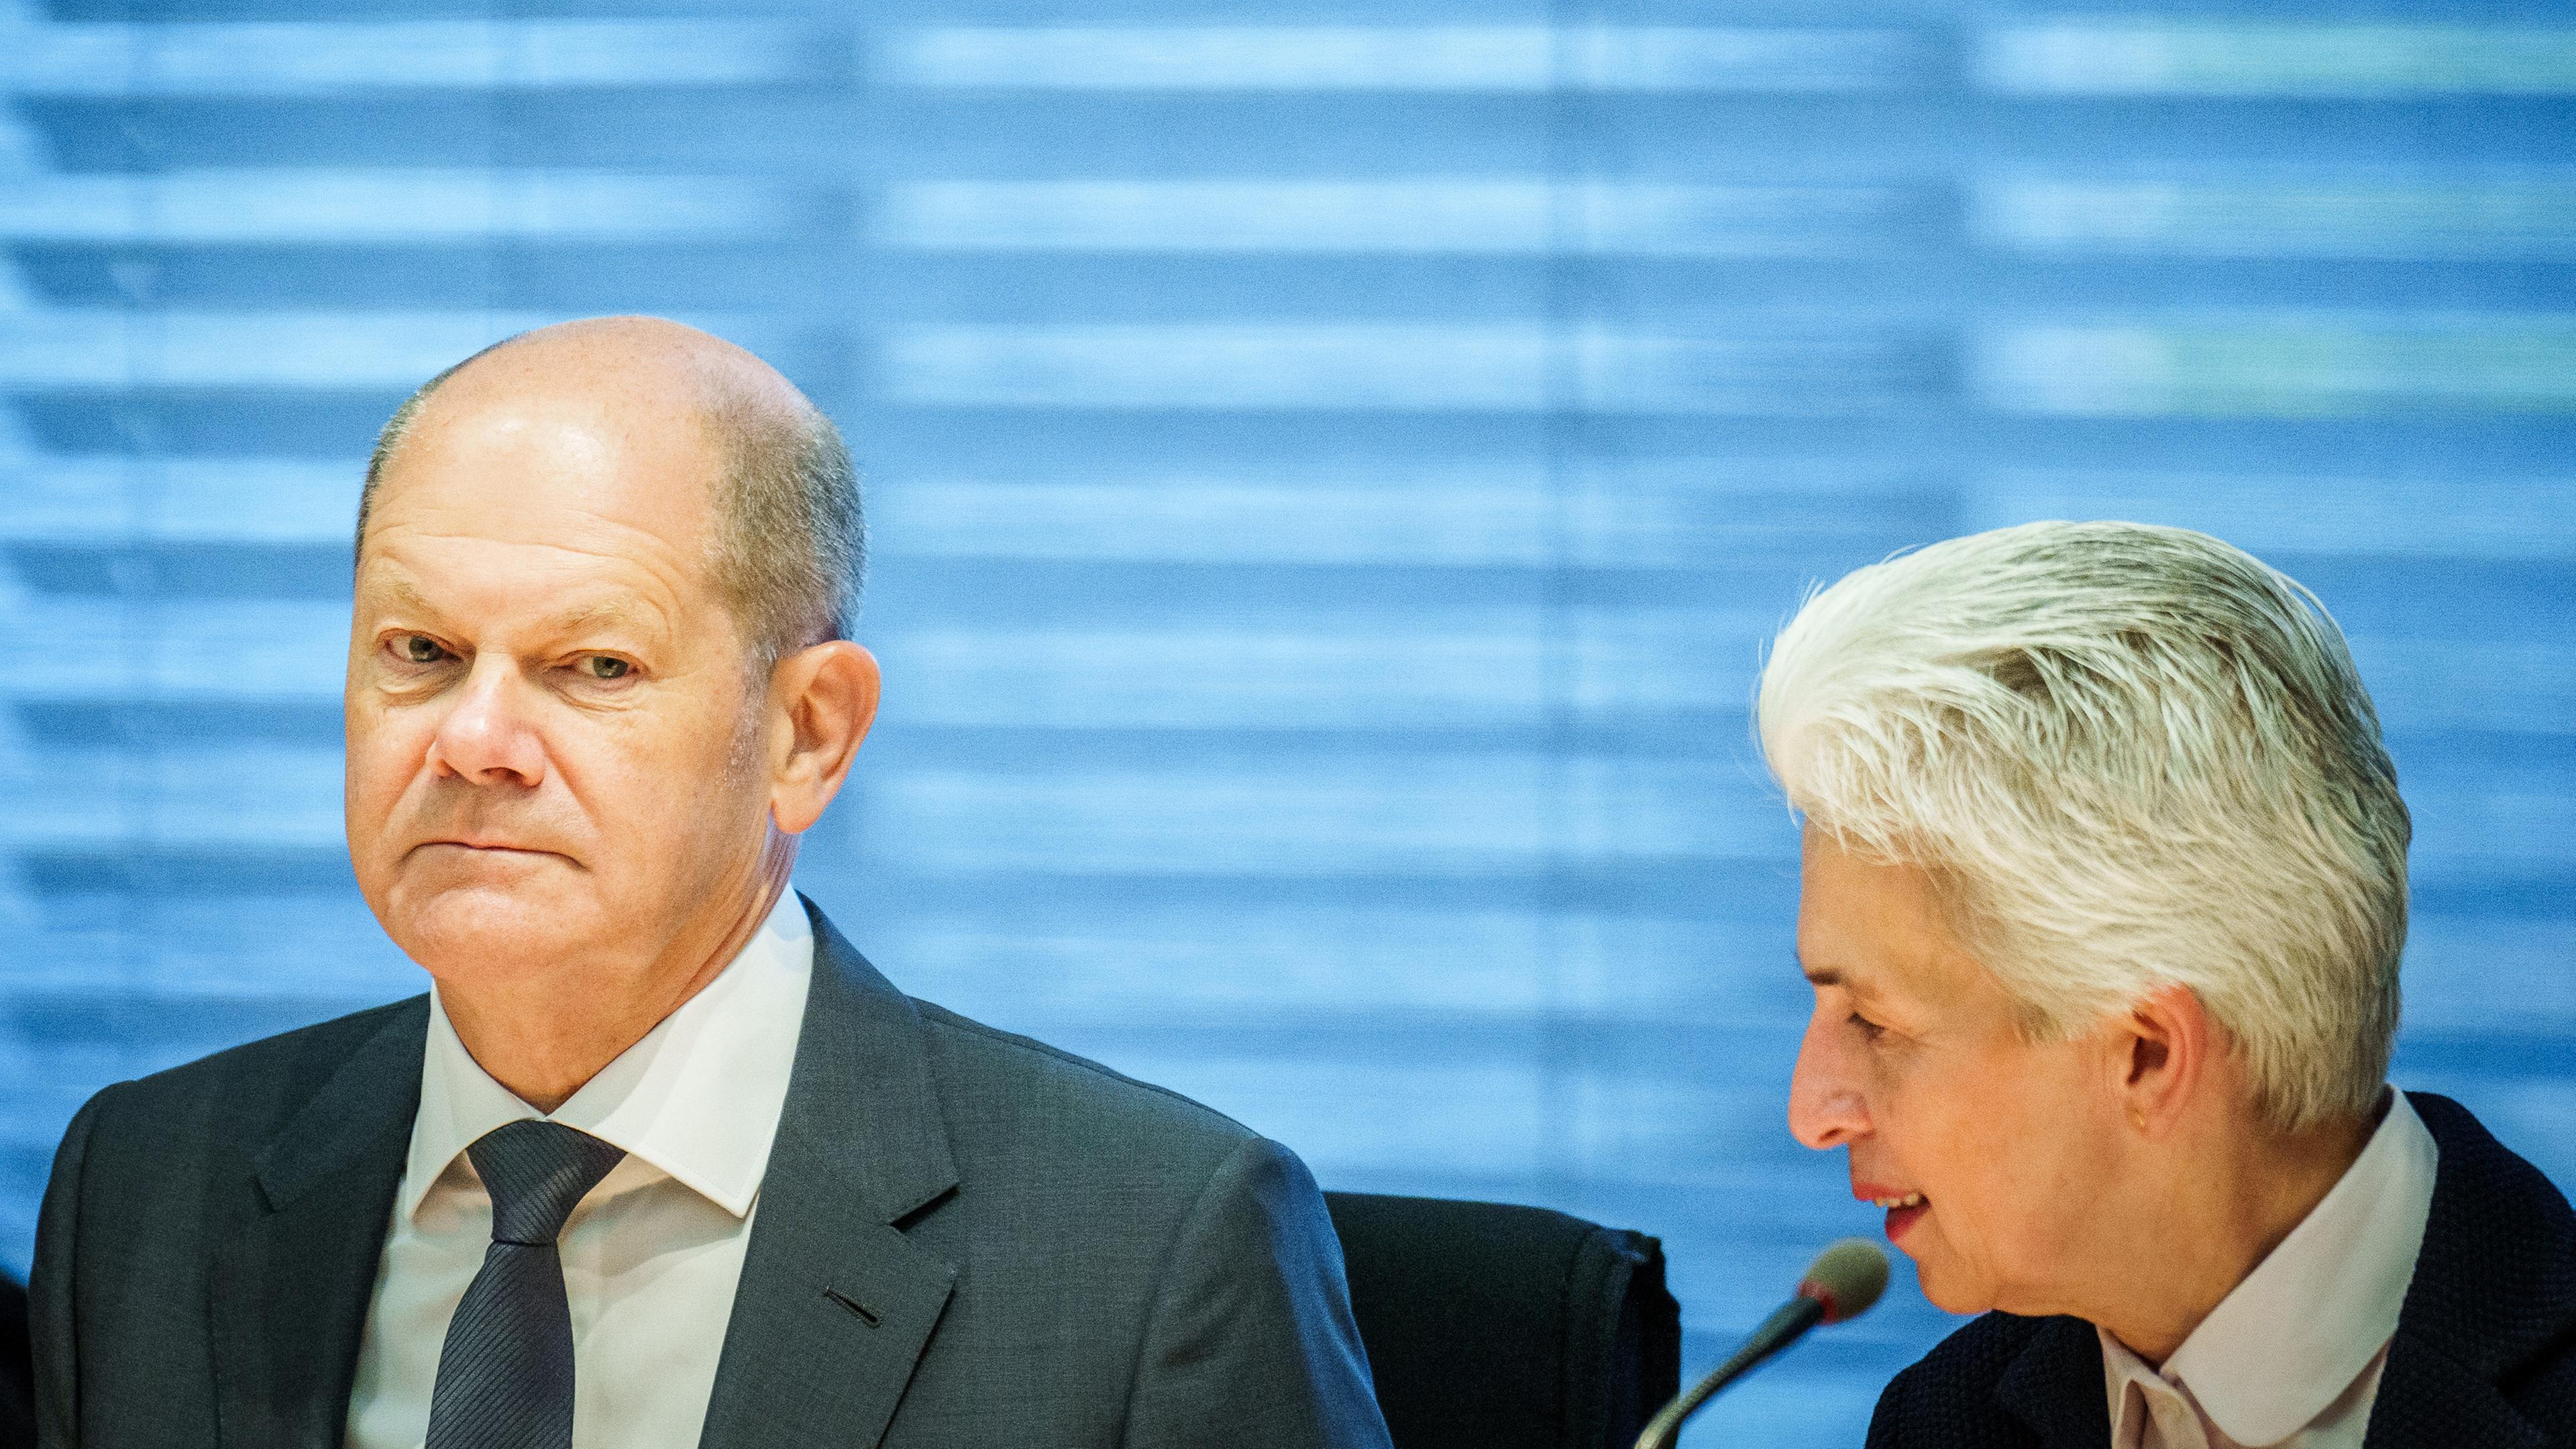 Bundeskanzler Olaf Scholz (SPD), sitzt neben der Ausschussvorsitzenden Marie-Agnes Strack-Zimmermann (FDP)